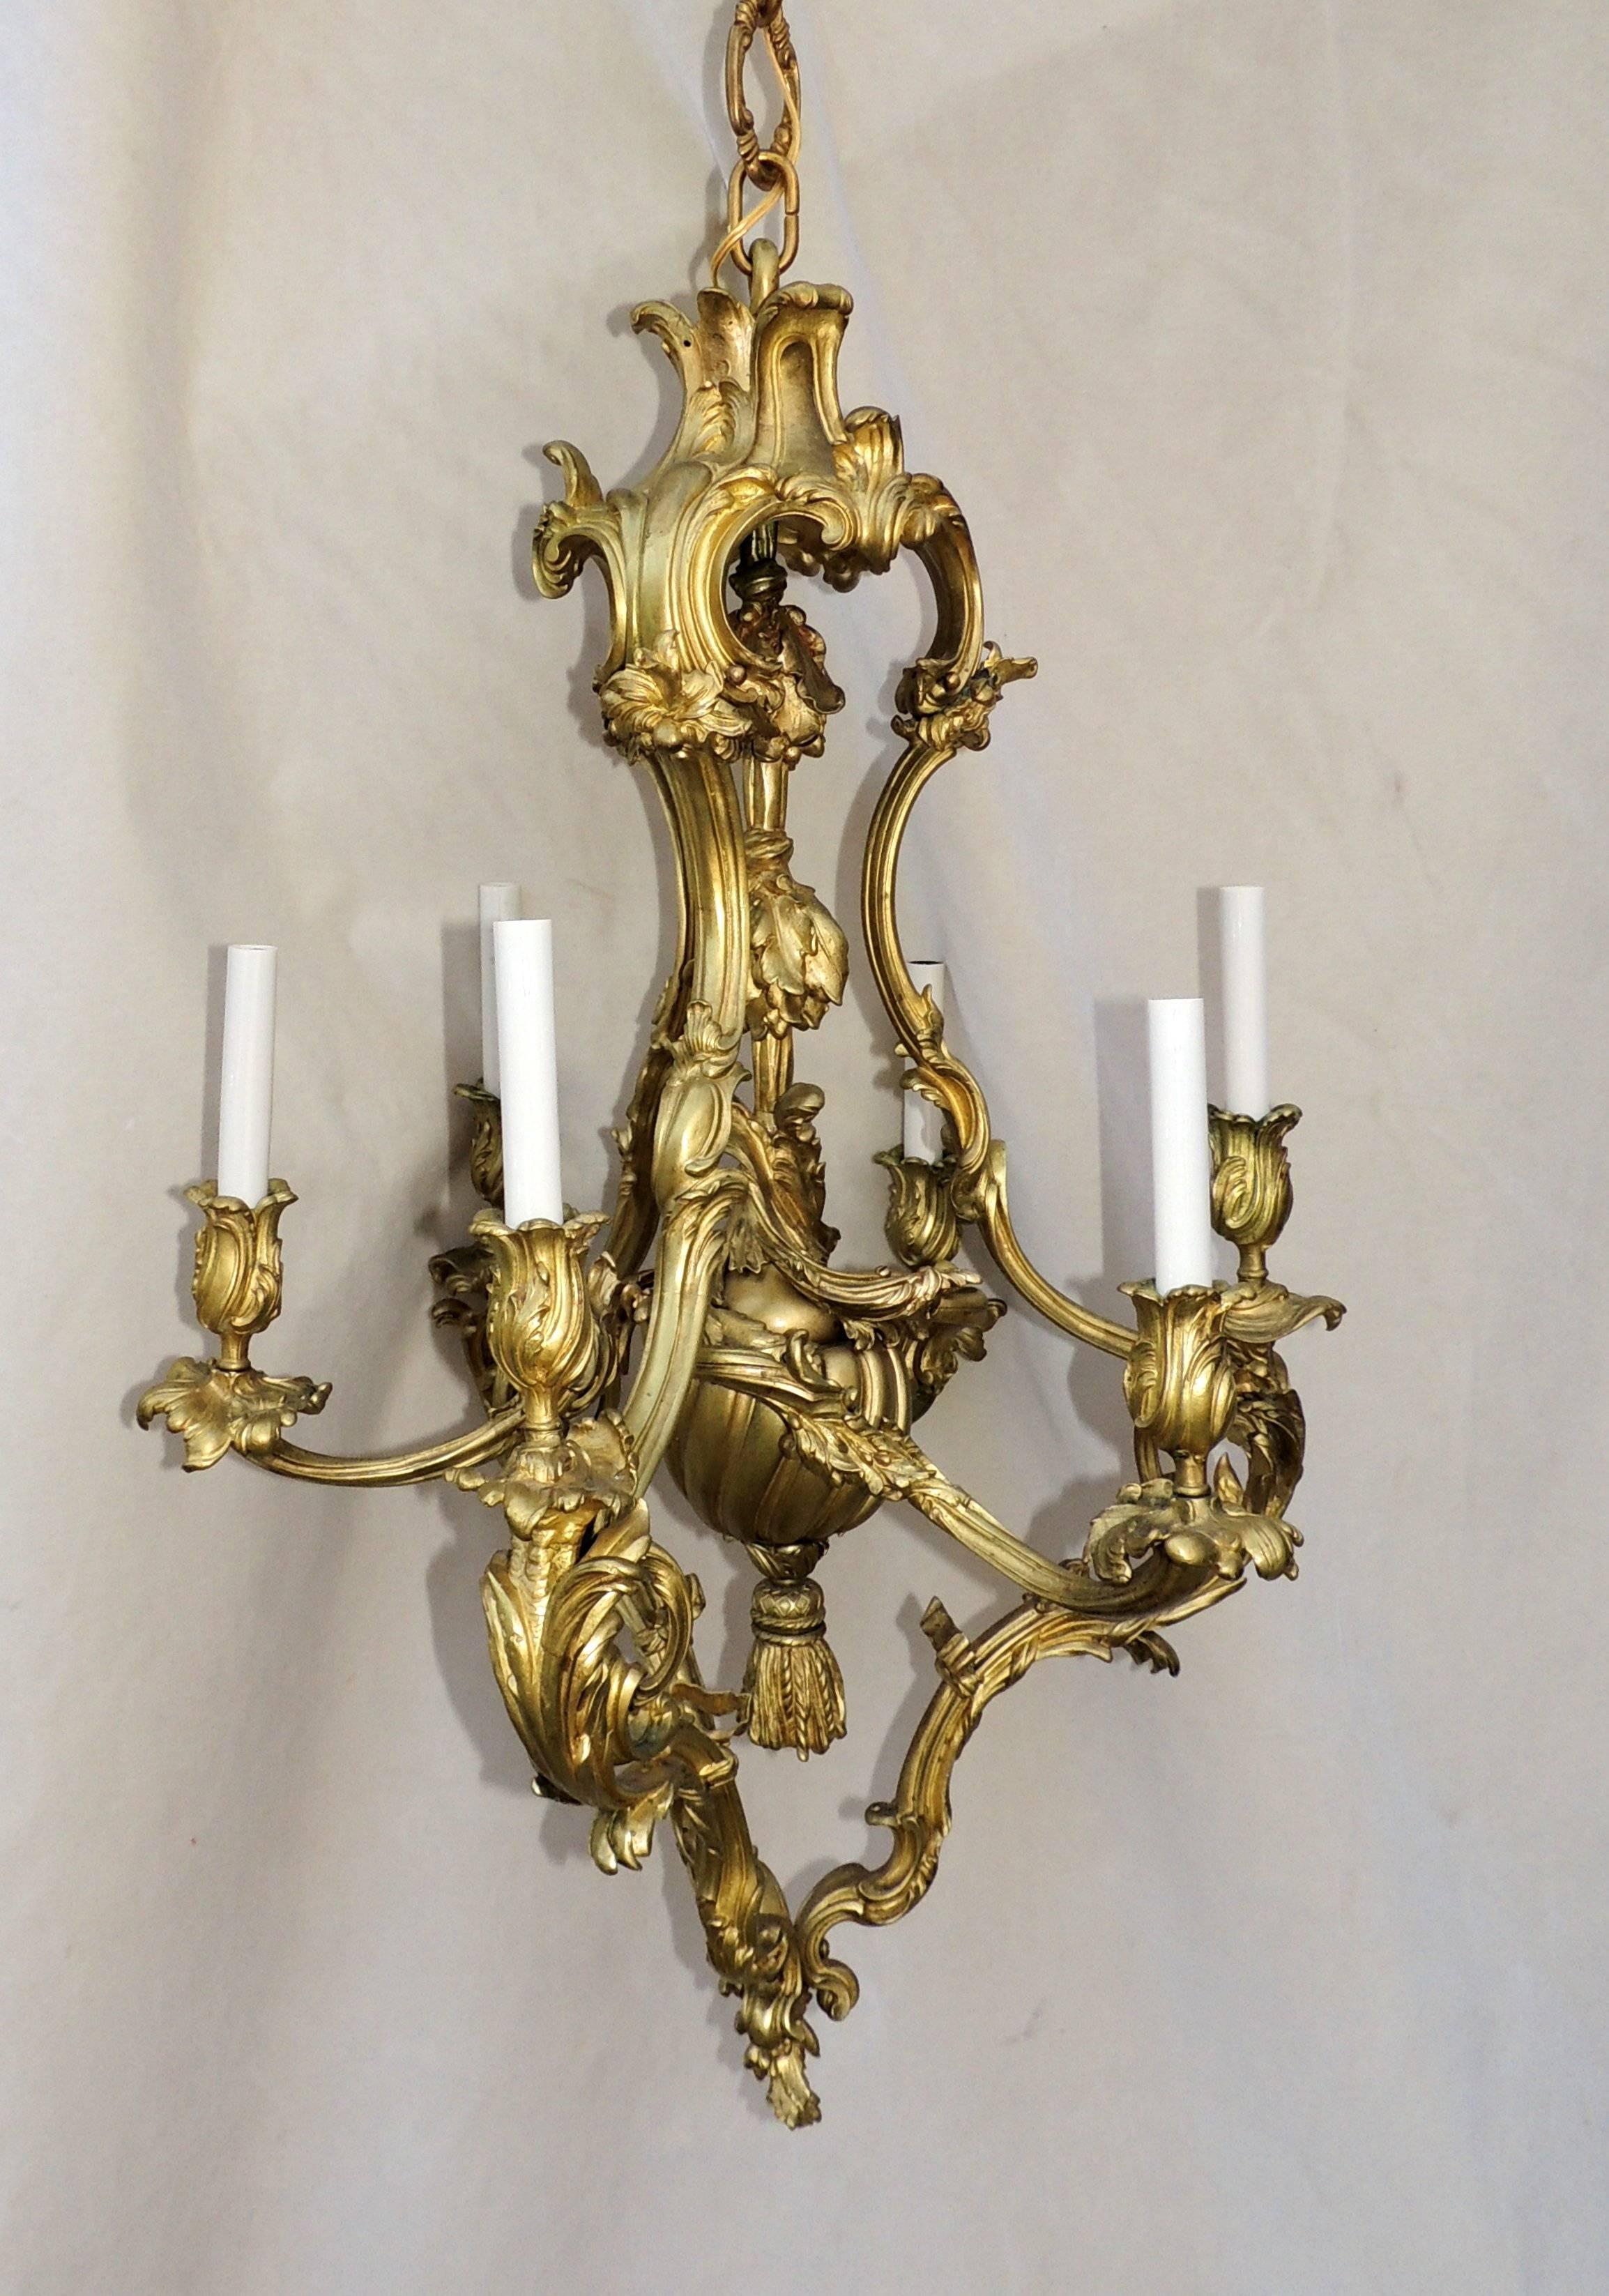 Wunderschöne Blätter umhüllen die sechs Kerzenschalen und sind in diesem großen Rokoko-Kronleuchter aus Doré-Bronze mit Quasten in der Mitte anmutig geschichtet.

Maße: 38